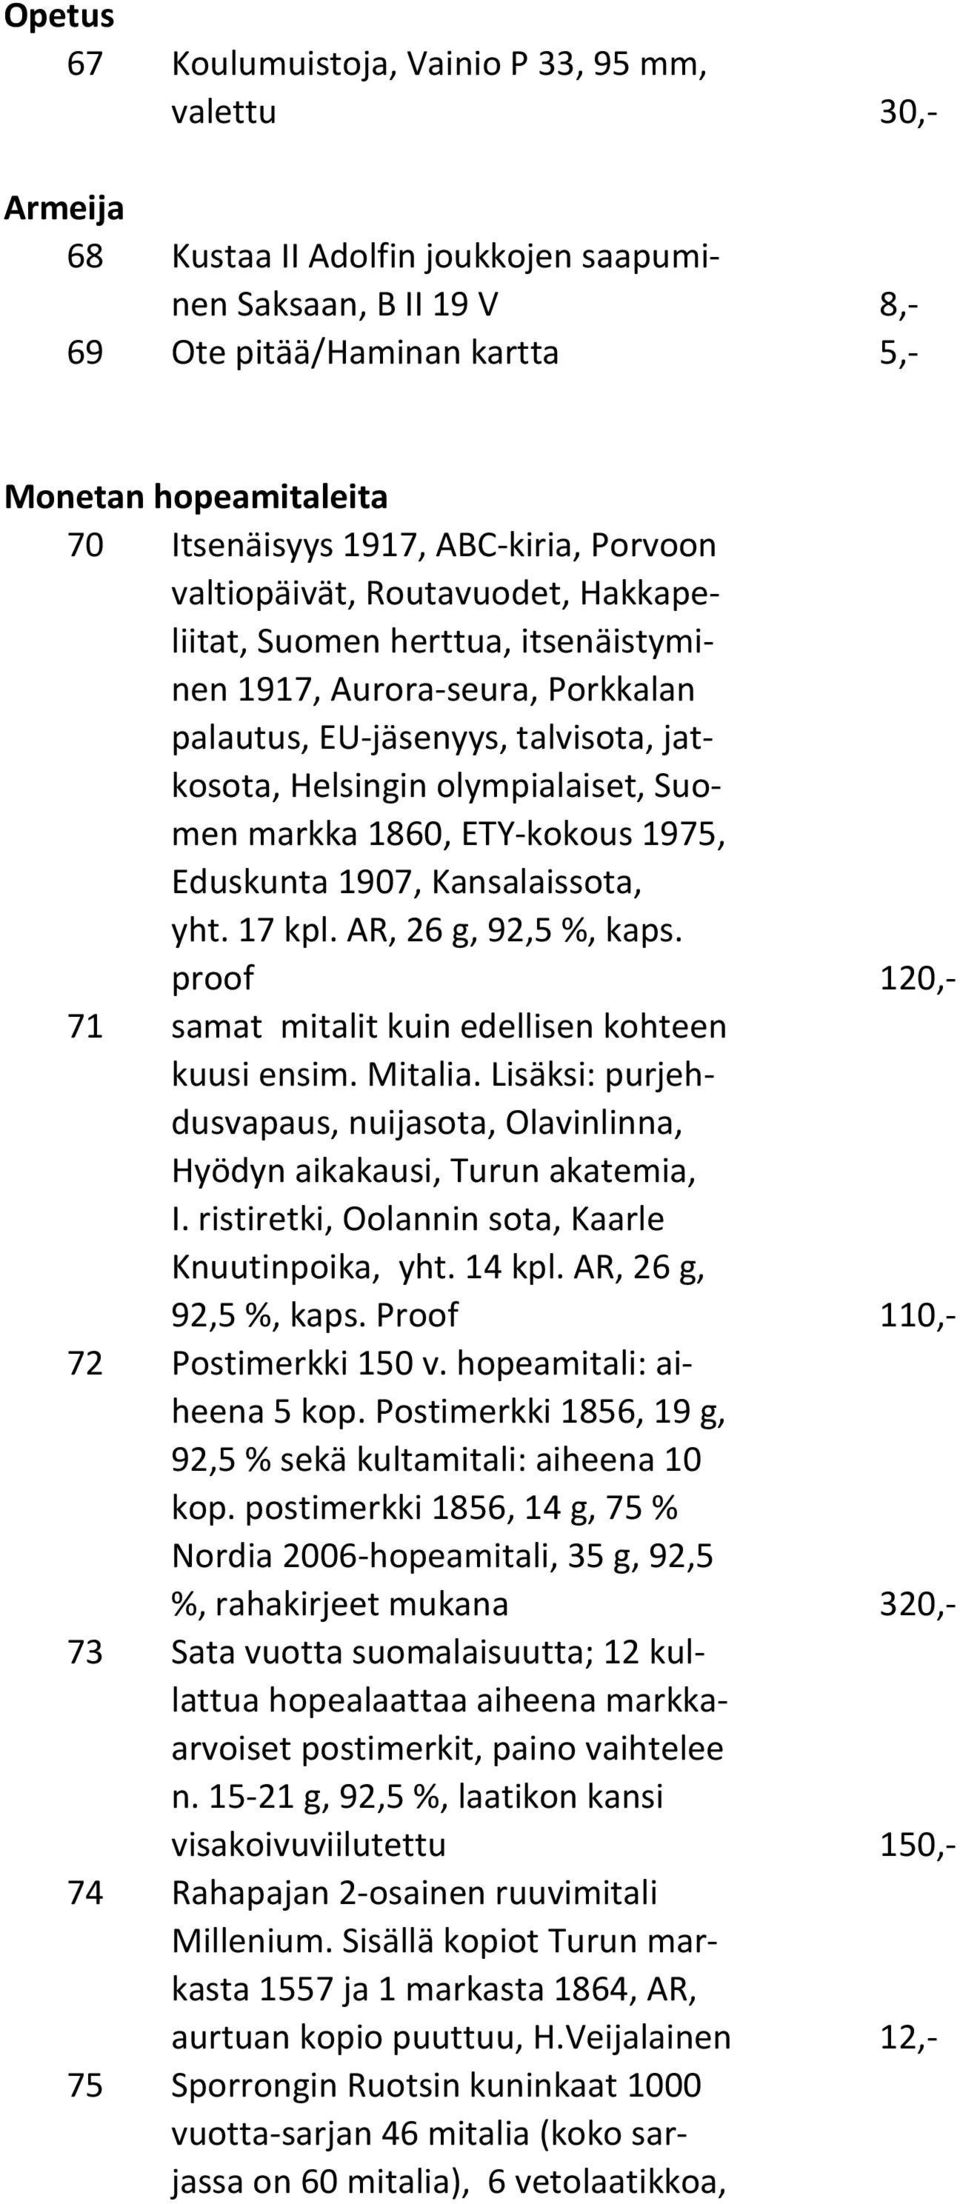 olympialaiset, Suomen markka 1860, ETY-kokous 1975, Eduskunta 1907, Kansalaissota, yht. 17 kpl. AR, 26 g, 92,5 %, kaps. proof 120,- 71 samat mitalit kuin edellisen kohteen kuusi ensim. Mitalia.